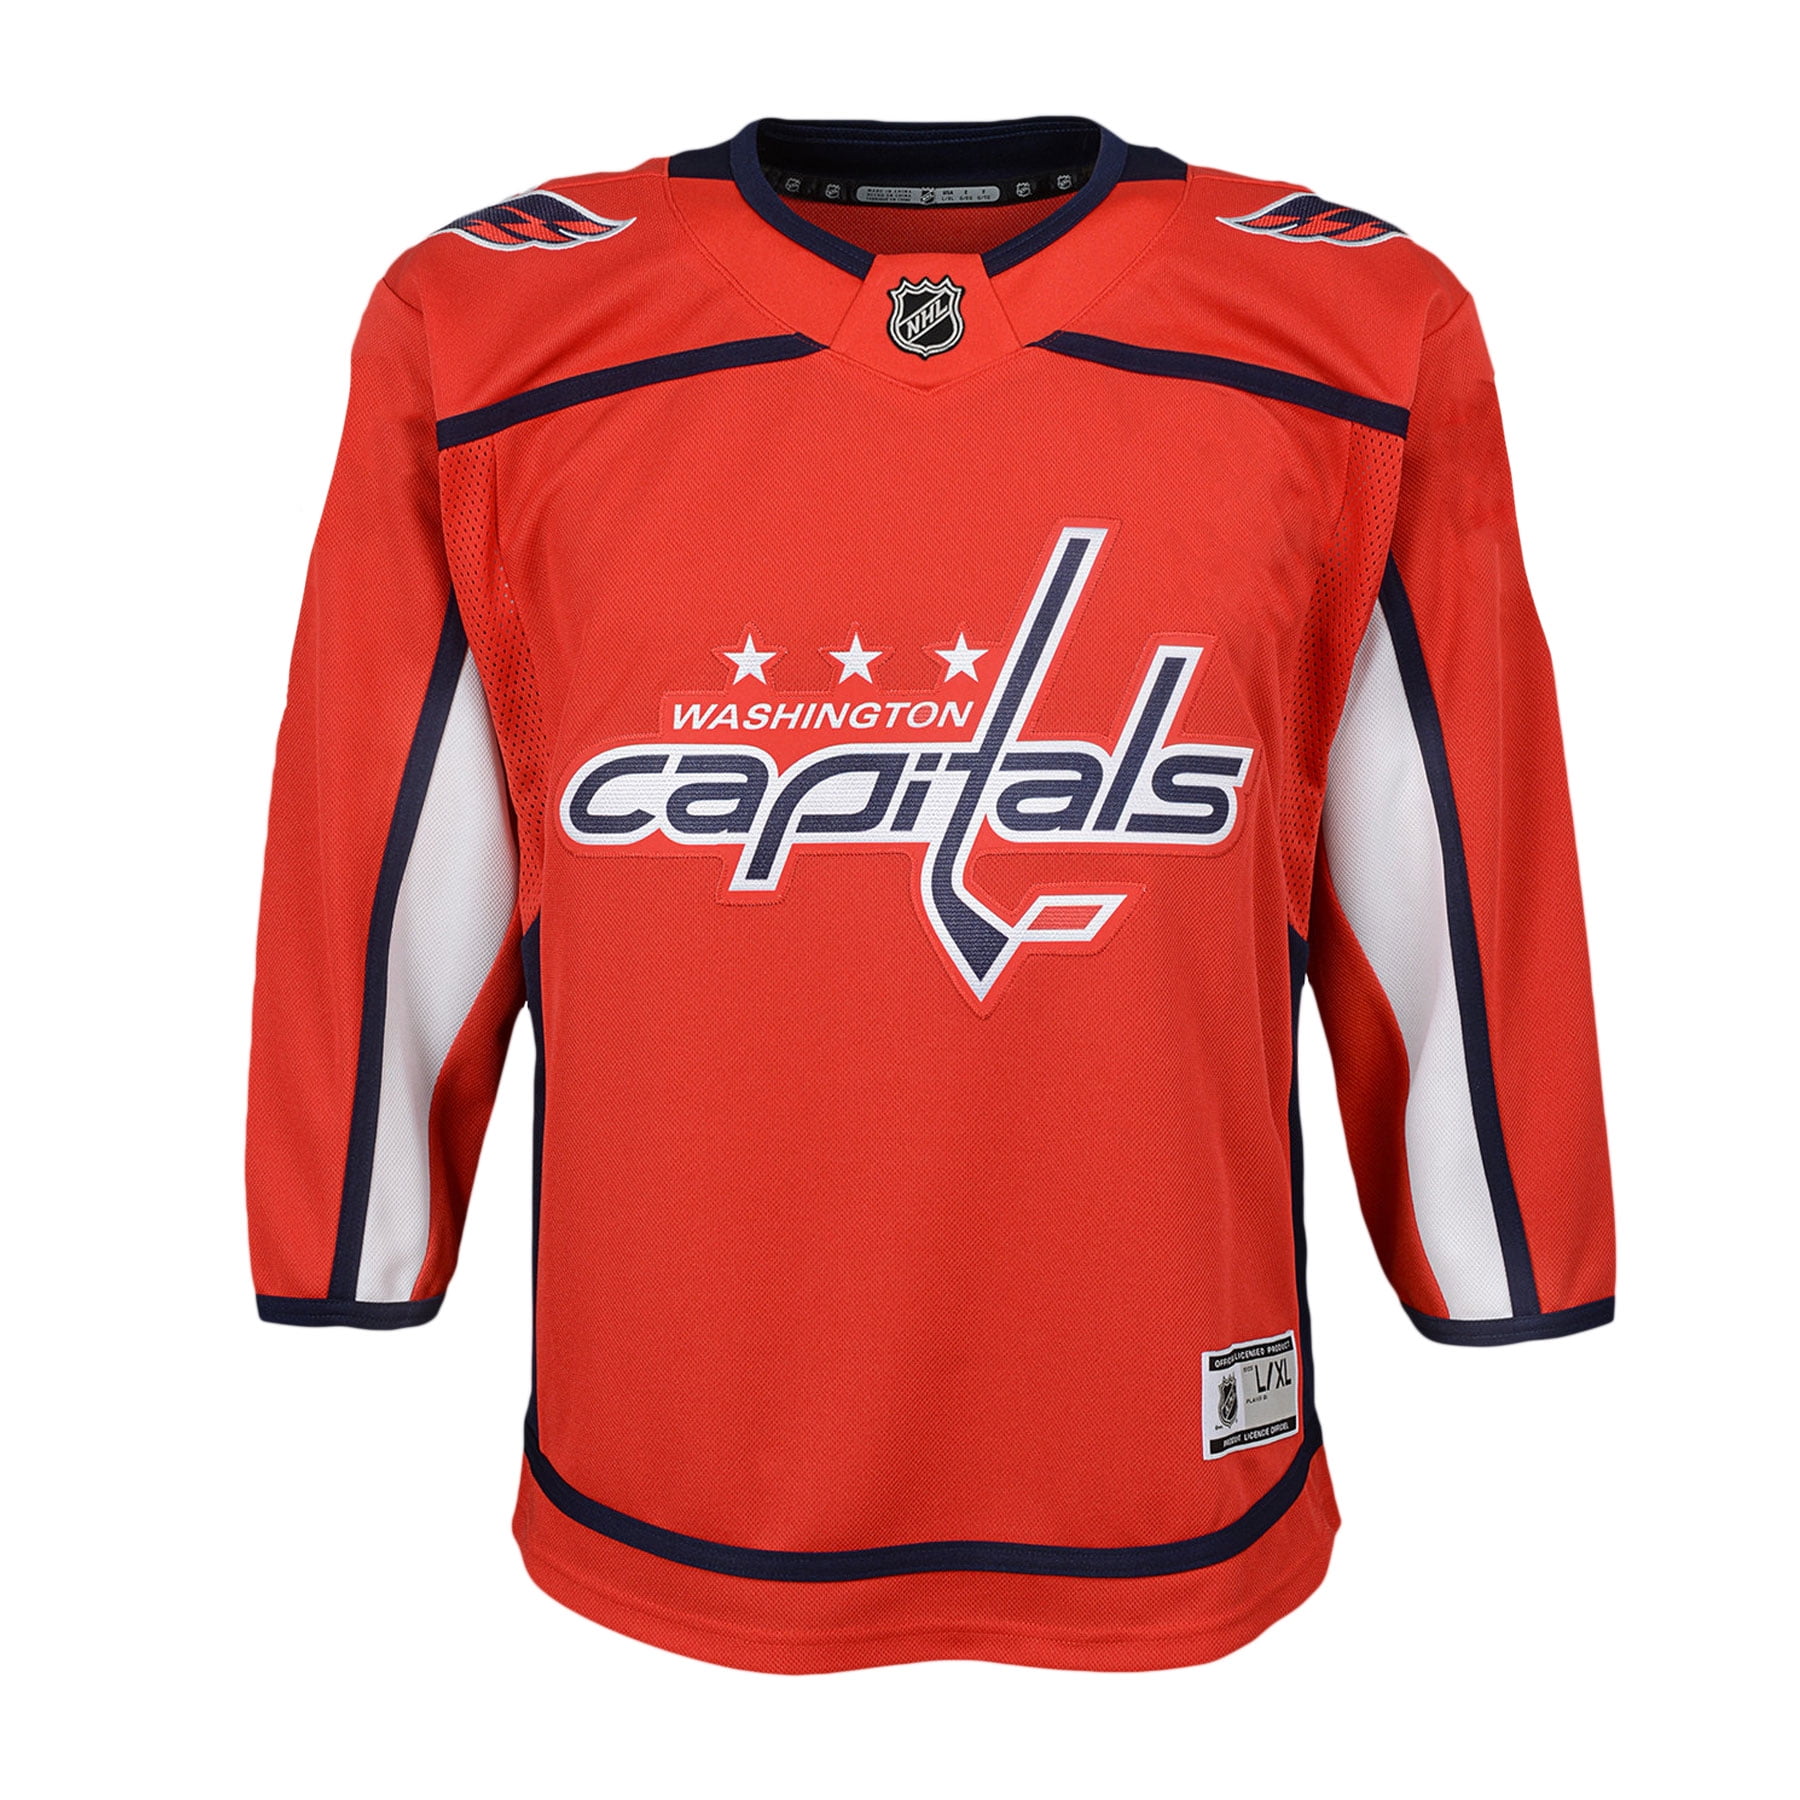 capitals replica jersey